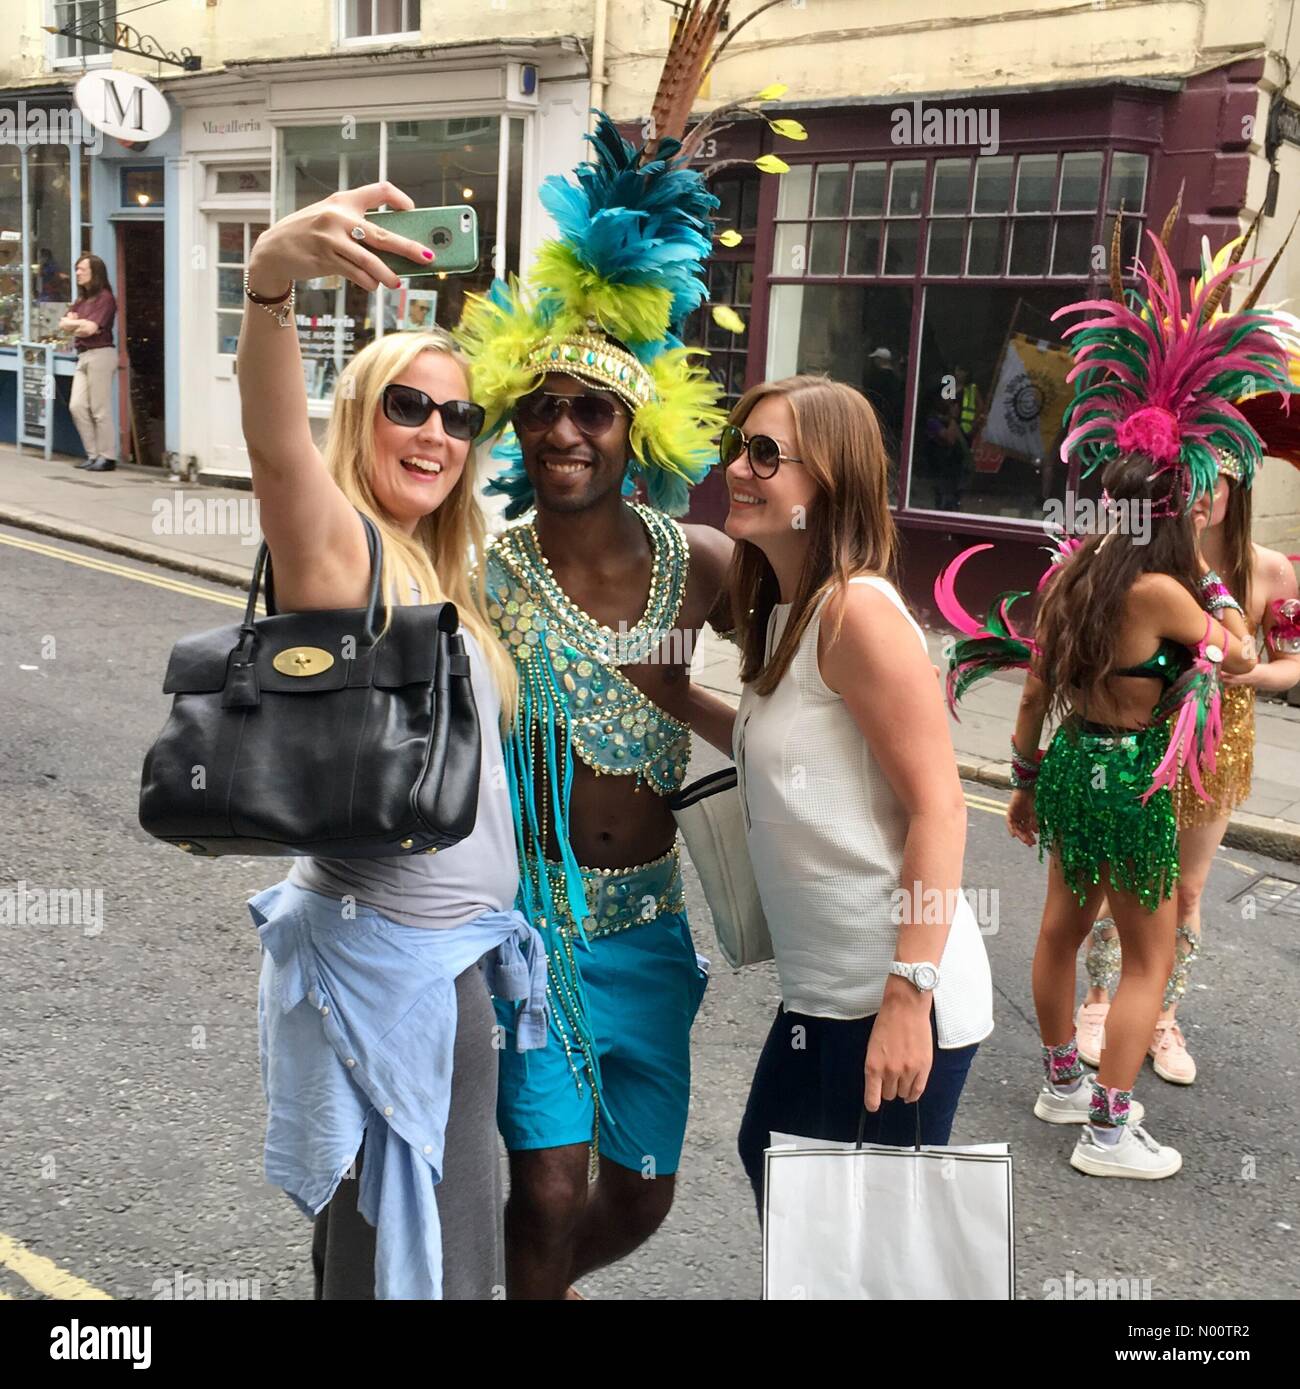 Badewanne Karneval 21. Juli 2018 Bath, England Großbritannien Mädchen eine selfie mit einem männlichen Tänzer bei der jährlichen Badewanne Karnevalsumzug. Credit: Lisa Werner/StockimoNews/Alamy leben Nachrichten Stockfoto